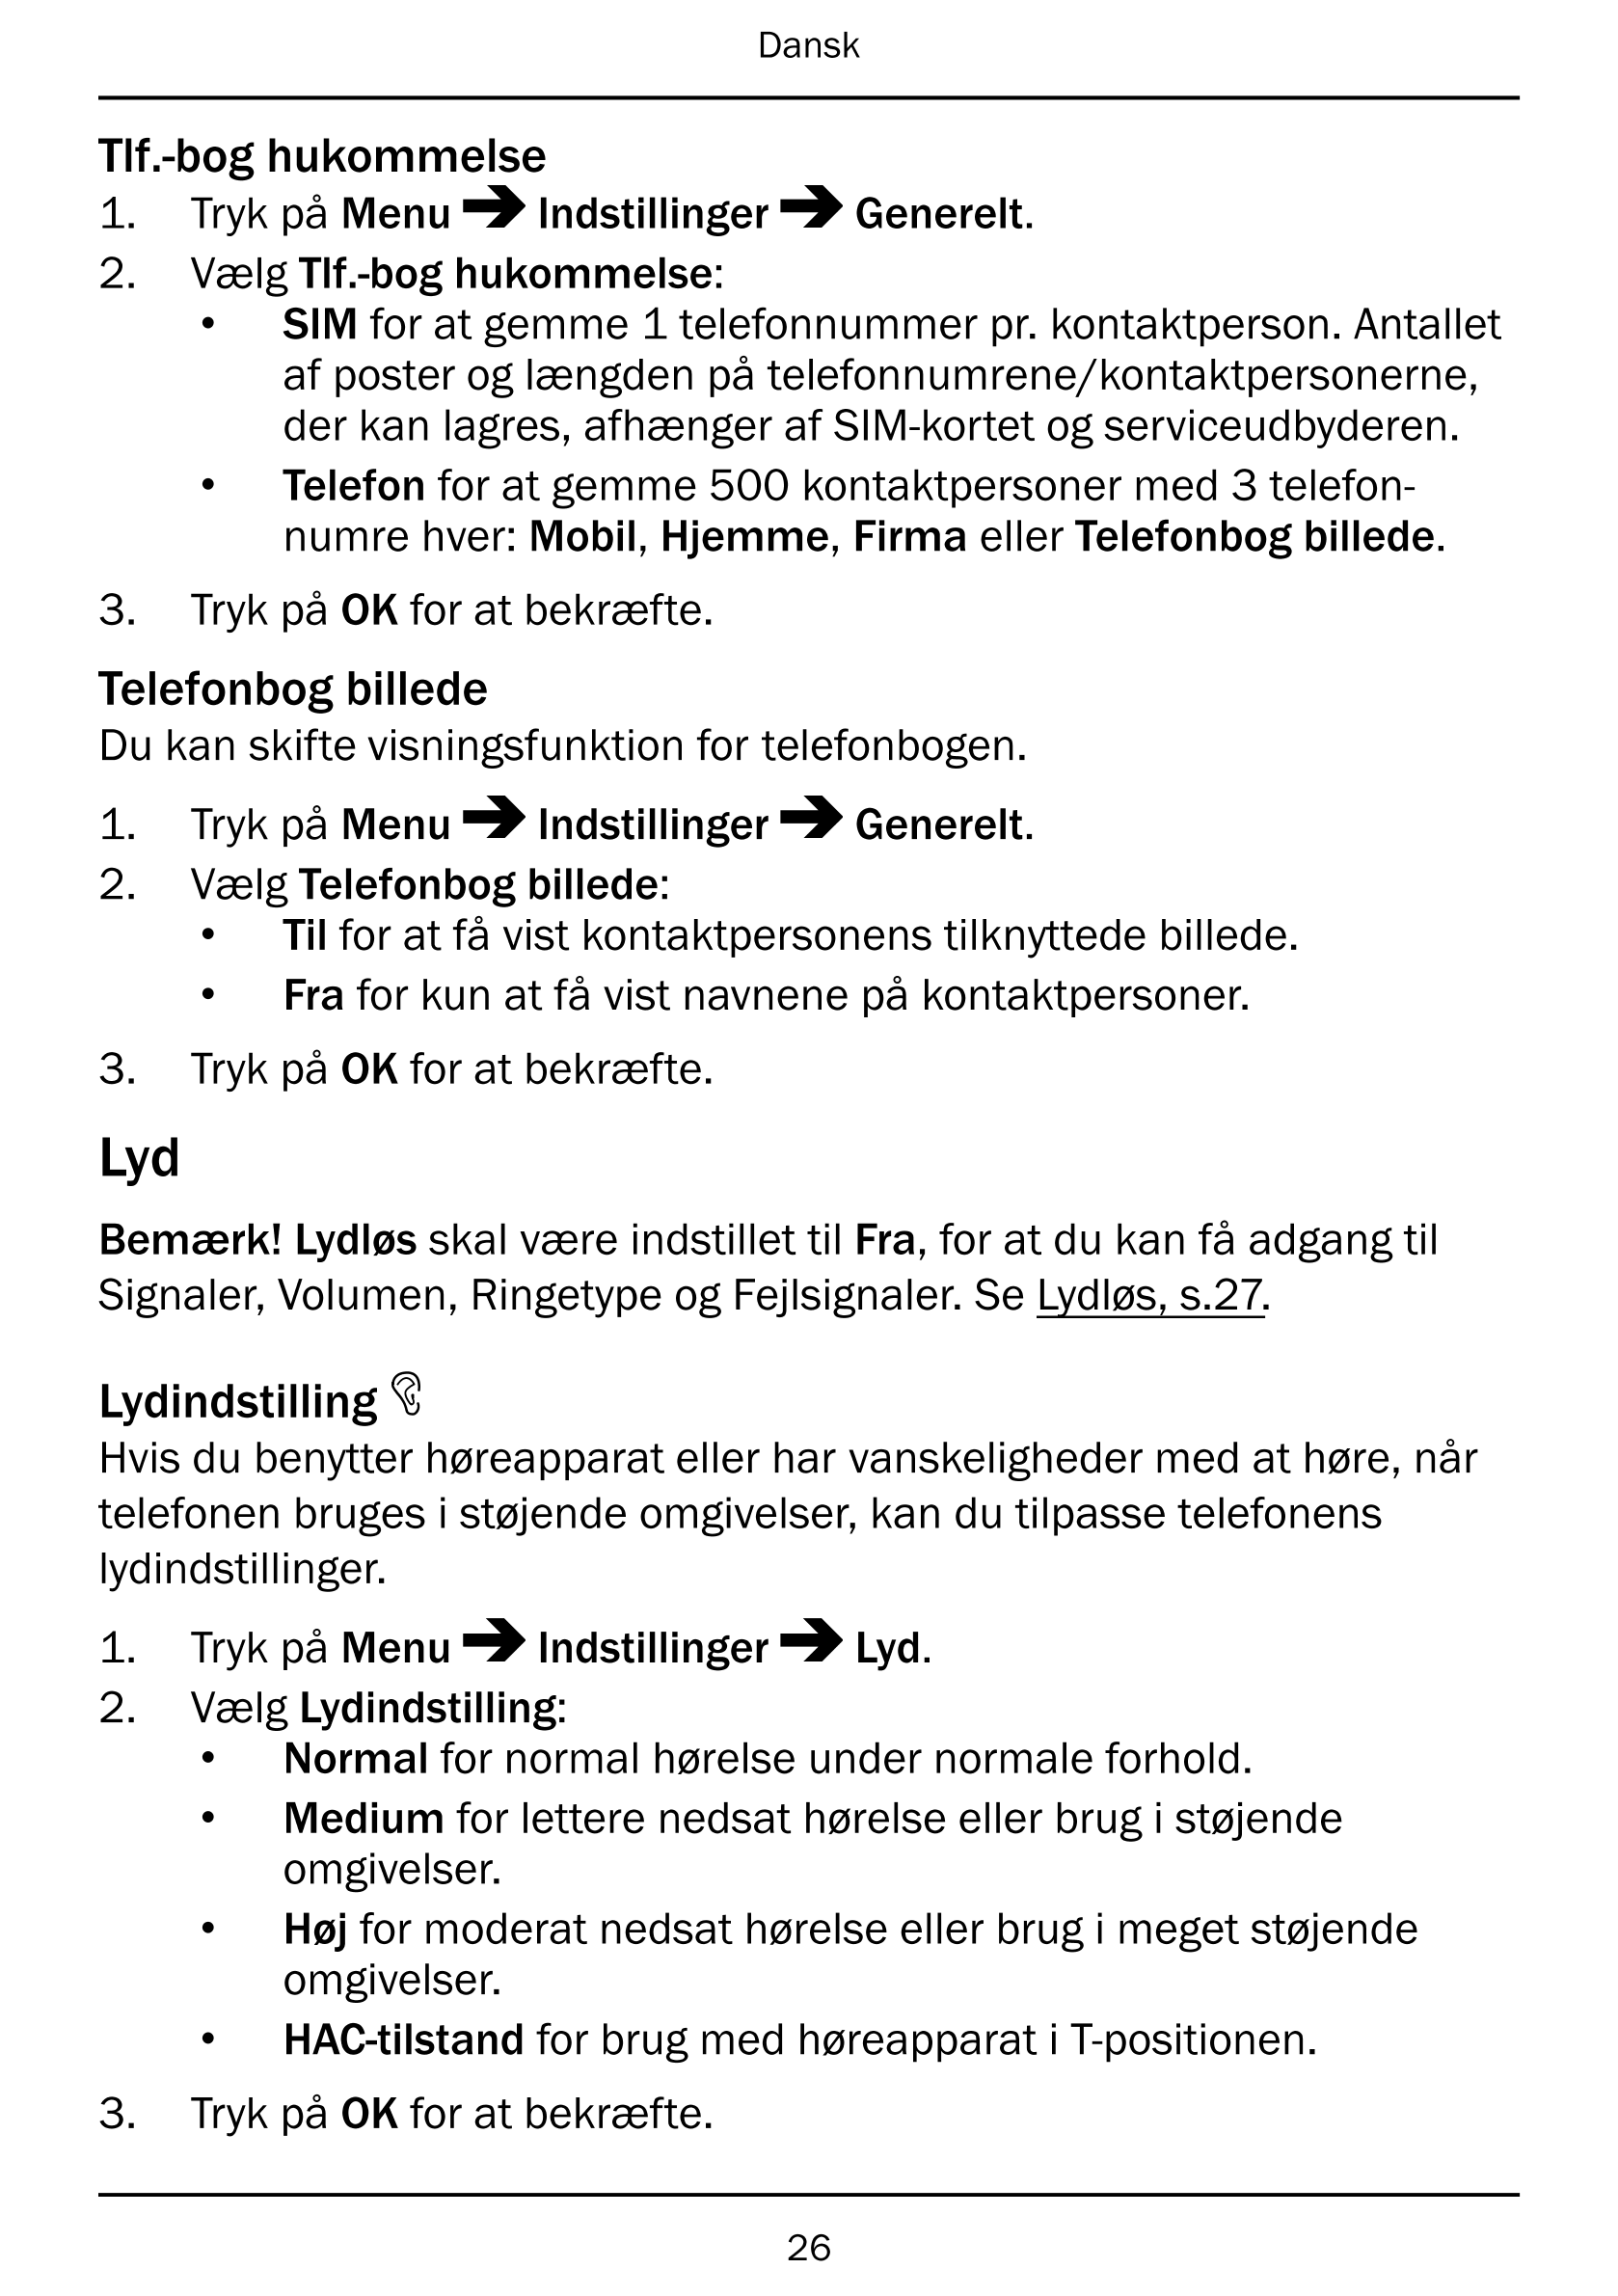 Dansk
Tlf.-bog hukommelse
1.     Tryk på Menu Indstillinger Generelt.
2.     Vælg Tlf.-bog hukommelse:
• SIM for at gemme 1 tele